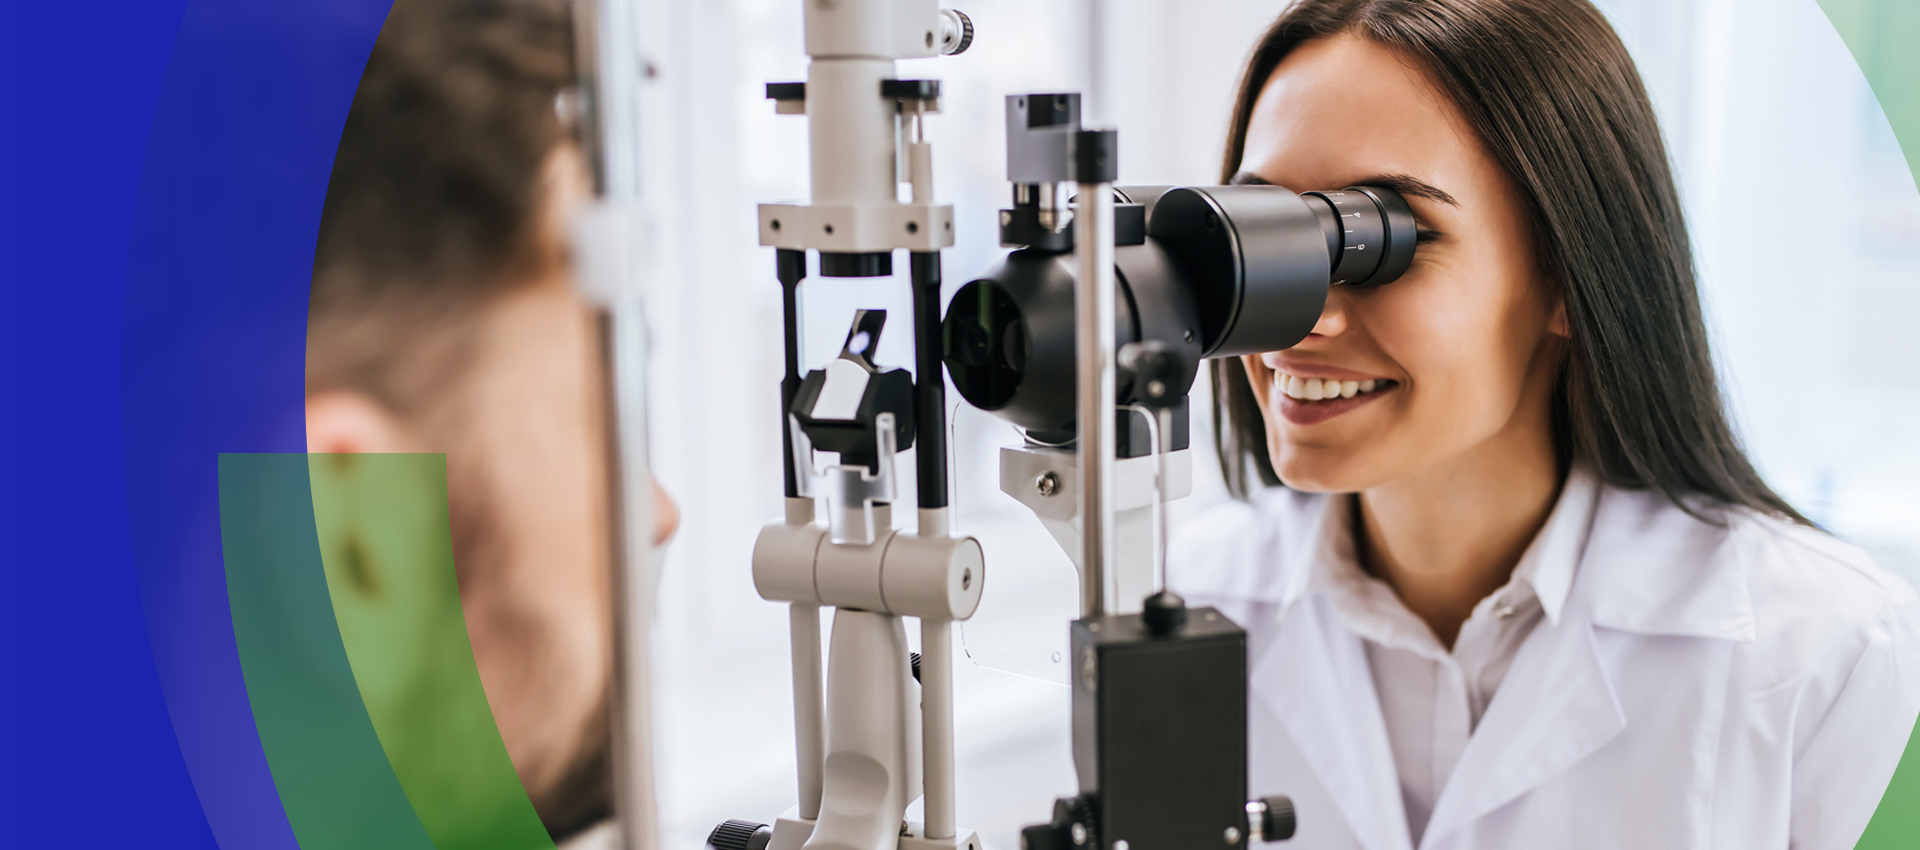 Um olhar minucioso: detectando o glaucoma no exame de vista